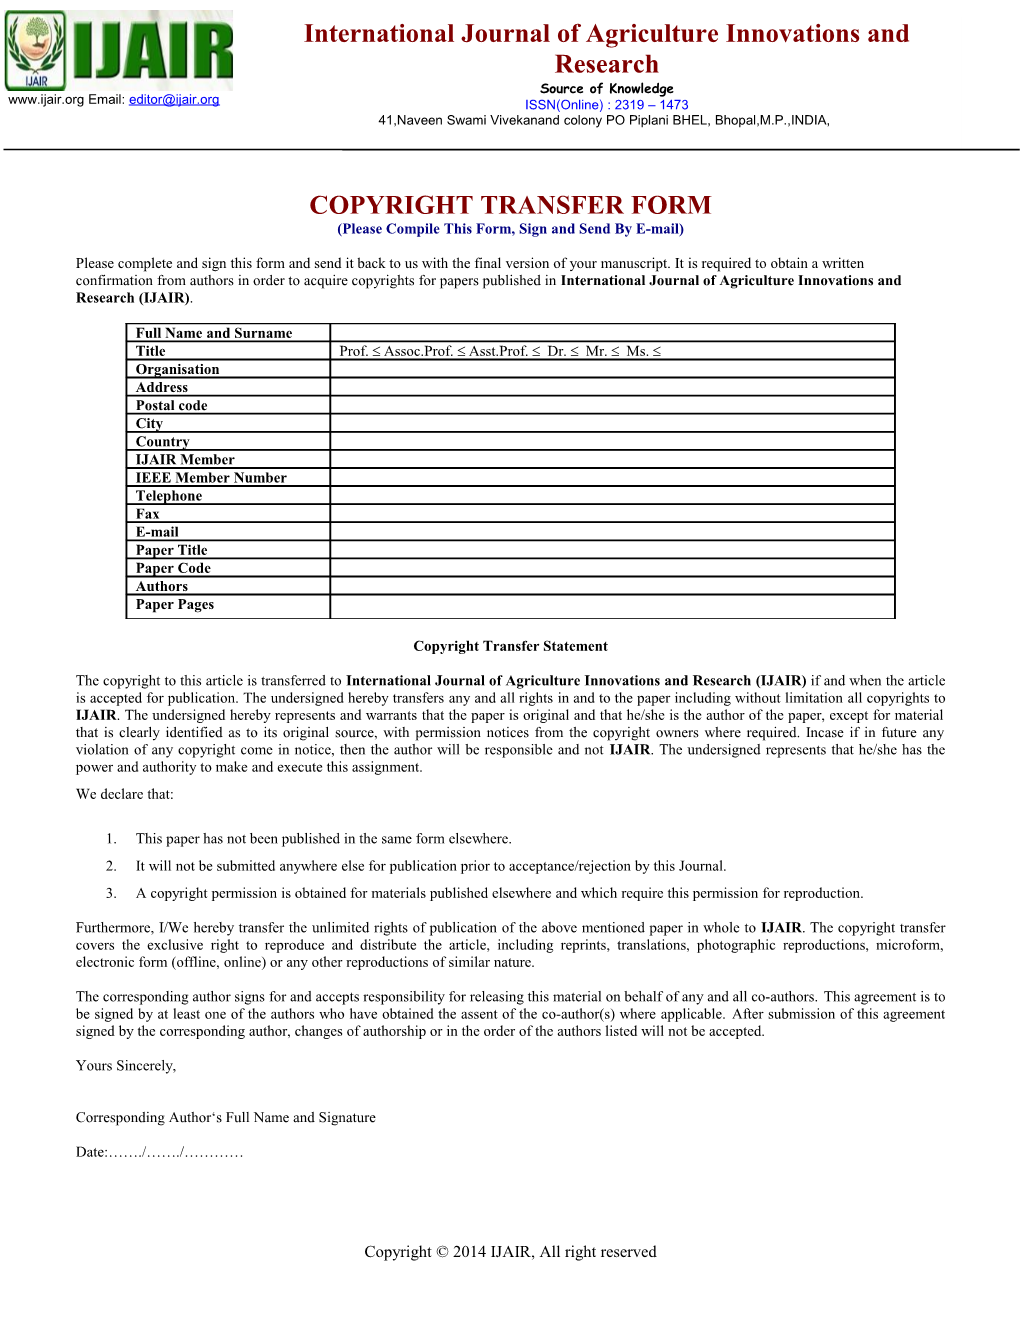 Copyright Transfer Form